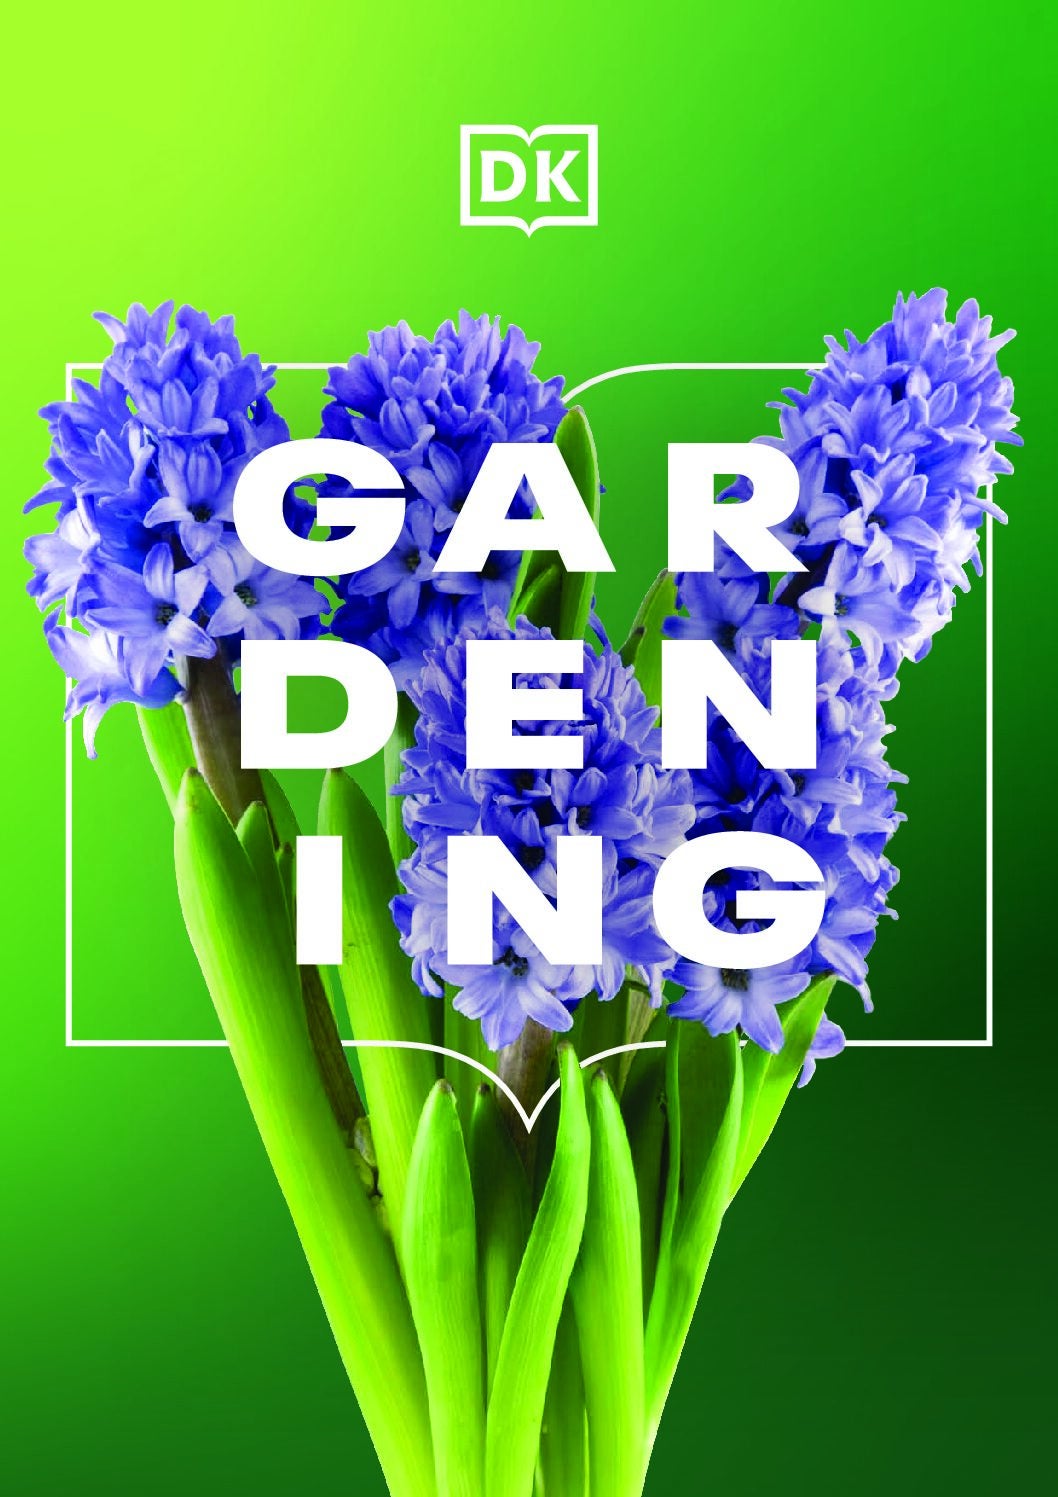 DK Gardening Brochure cover